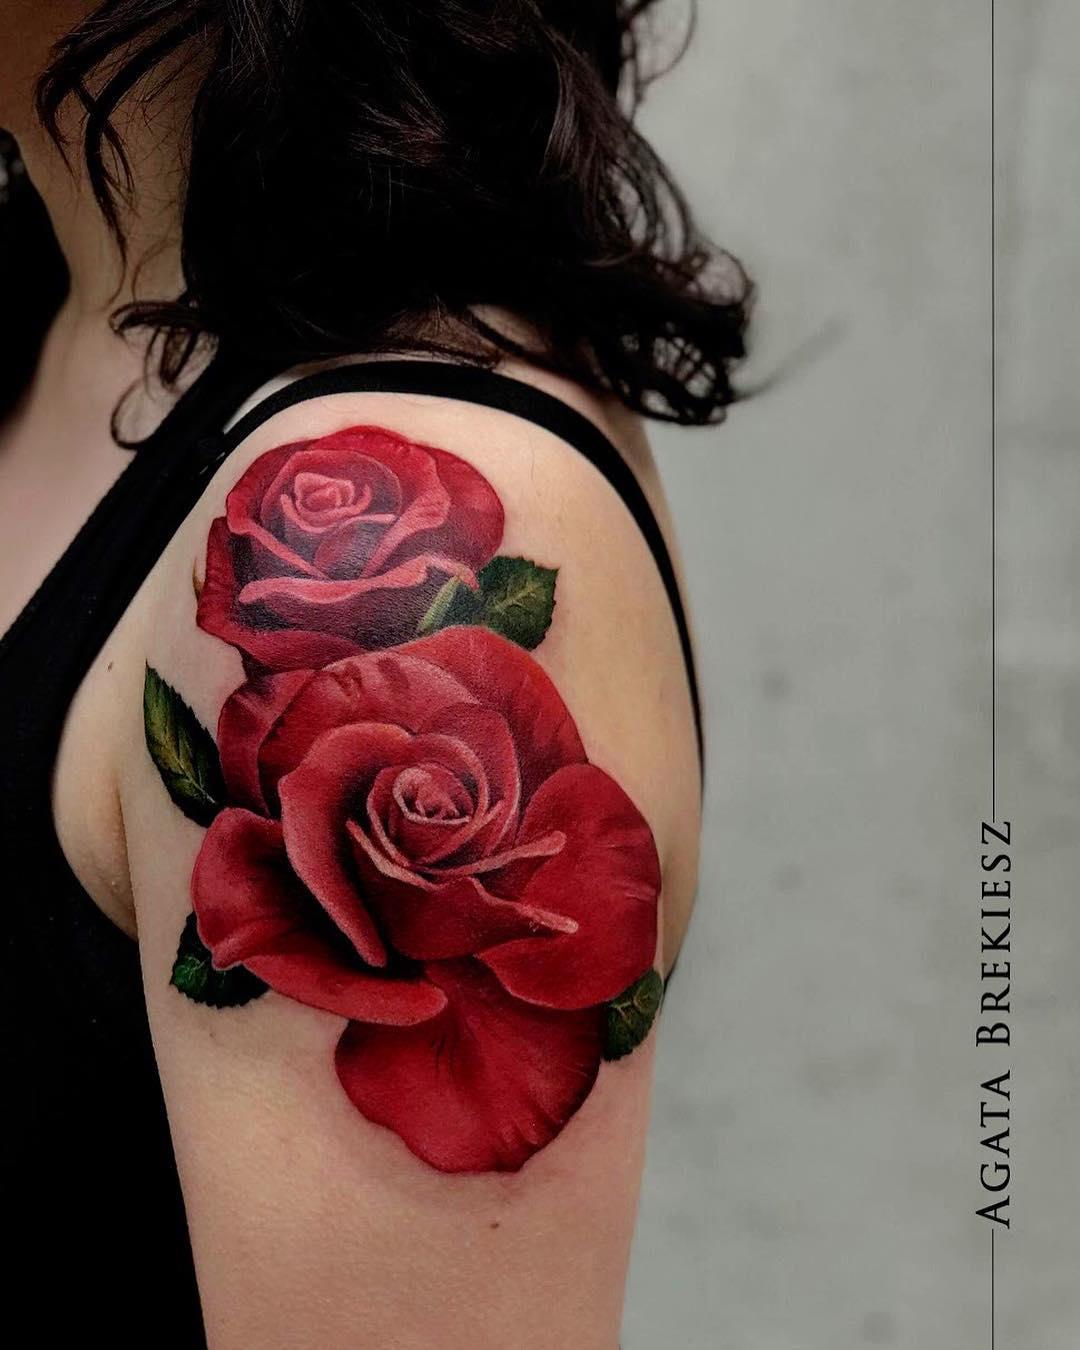 Inksearch tattoo Agata Brekiesz